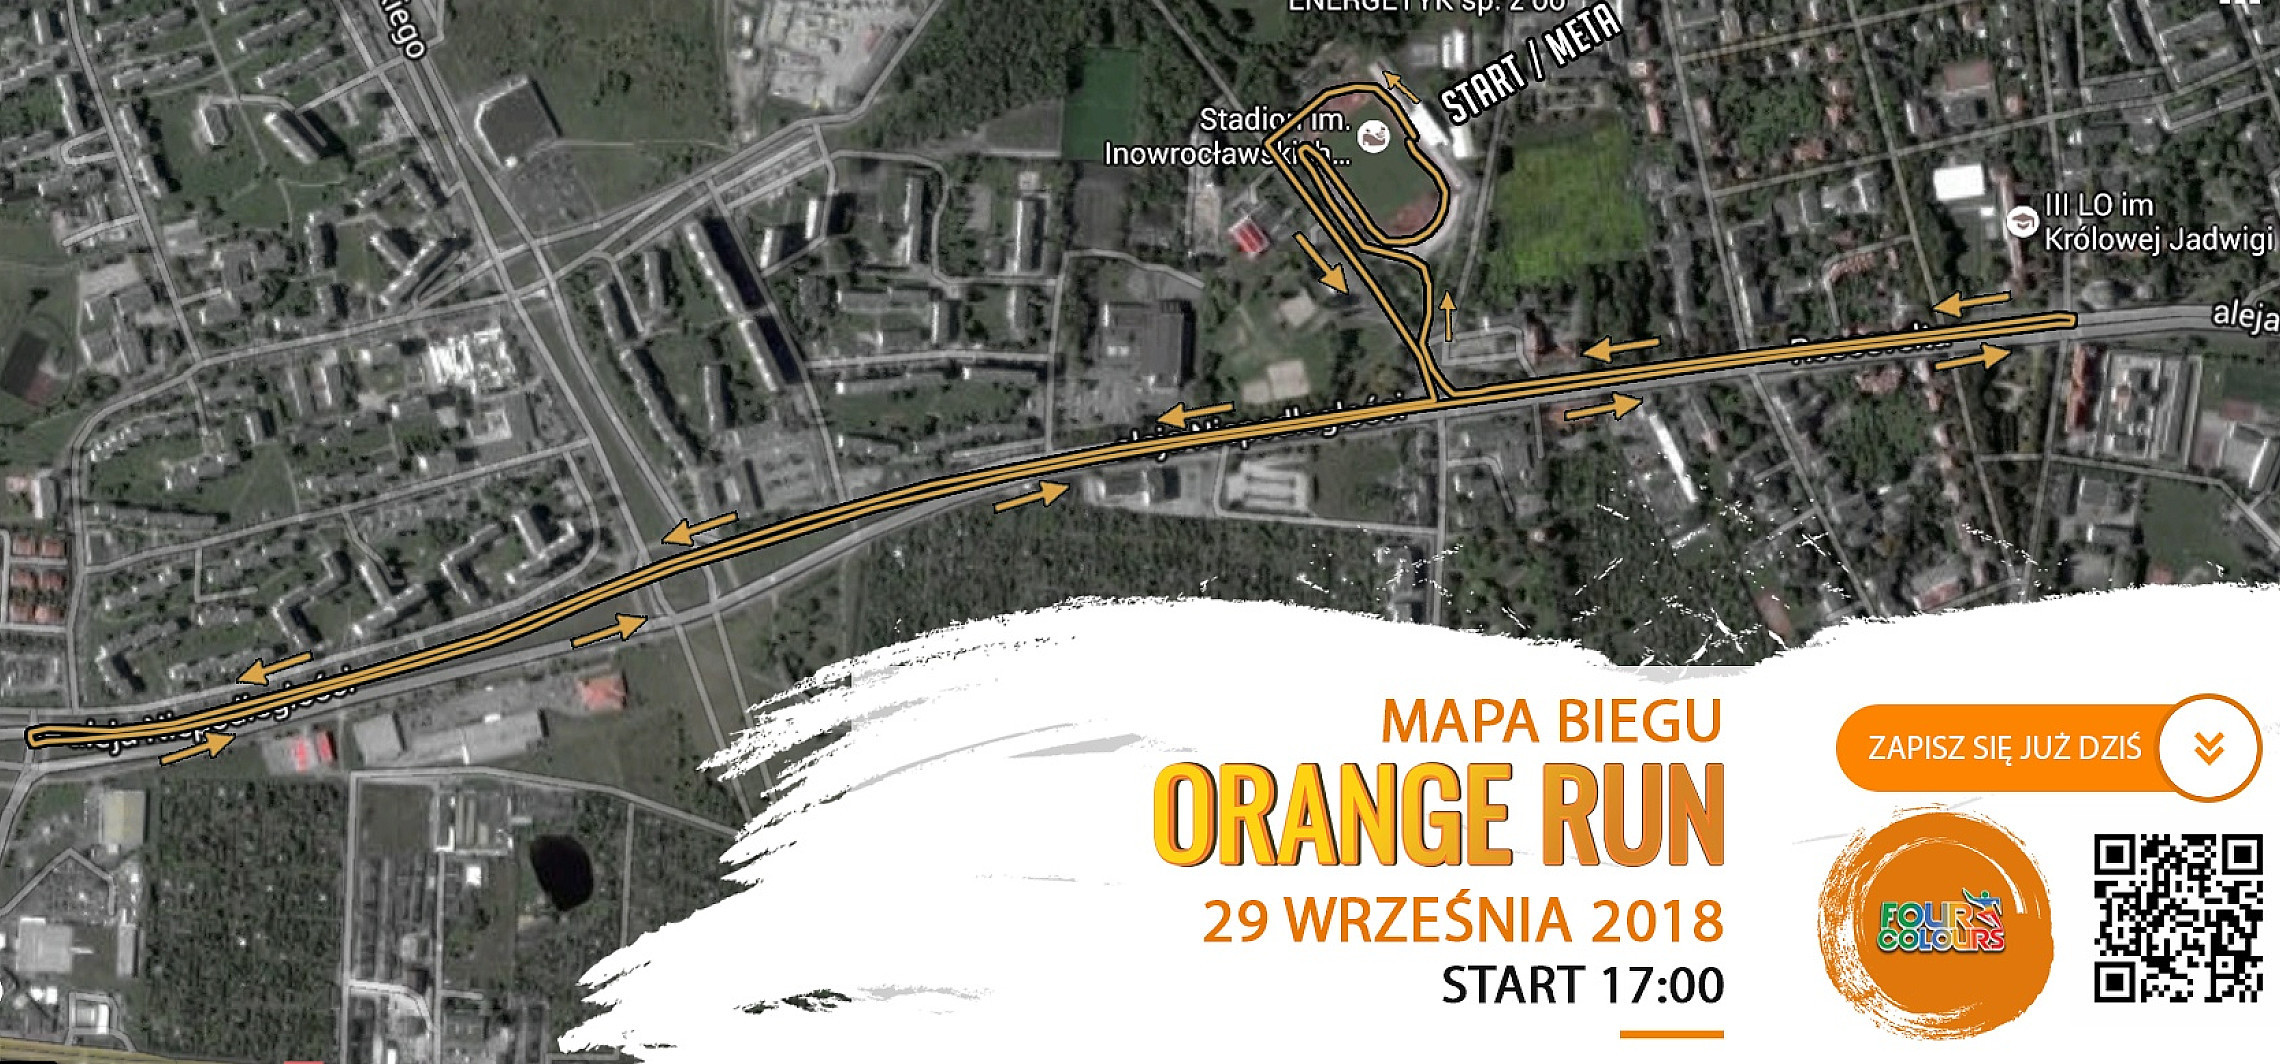 Inowrocław - Orange Run już w tę sobotę